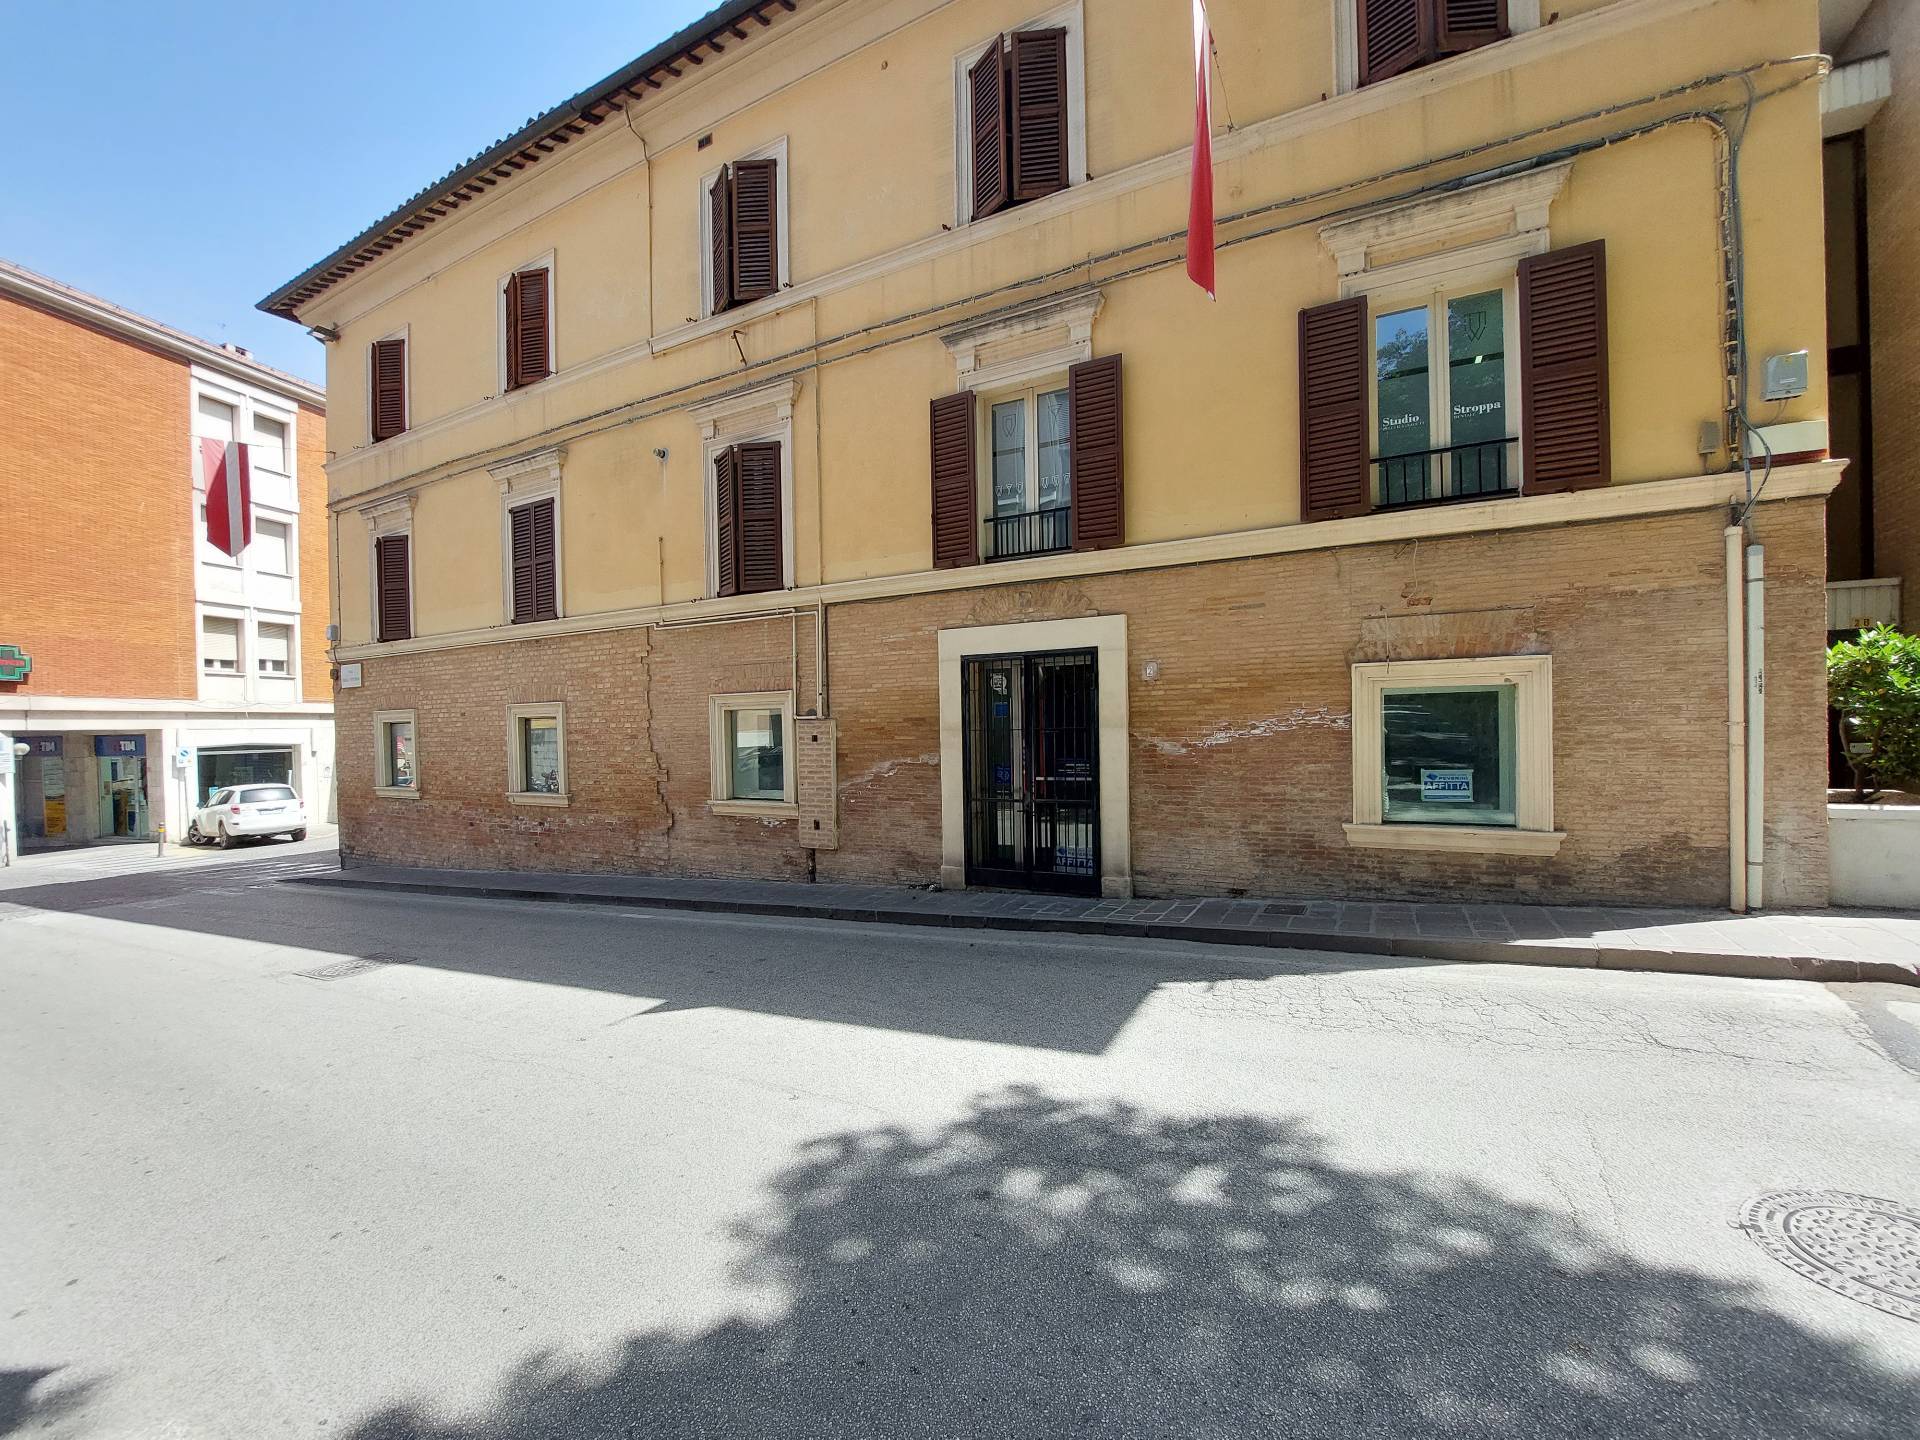 Negozio / Locale in affitto a Fabriano, 9999 locali, zona Località: CENTROSTORICO, prezzo € 850 | CambioCasa.it